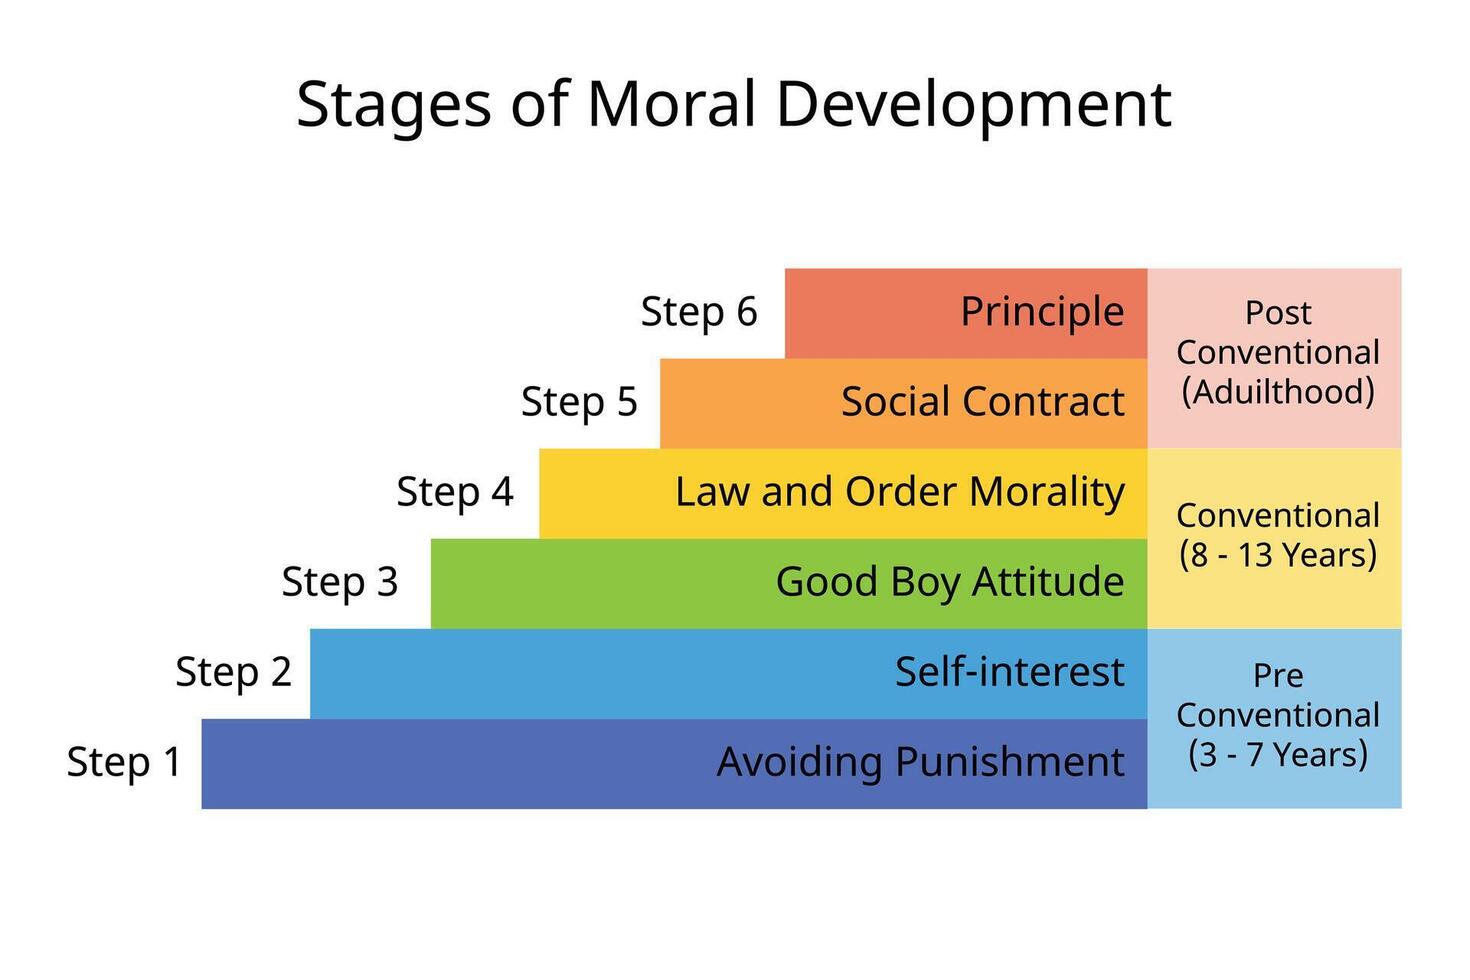 6 6 etapas de moral desarrollo de principio, social contacto, yo interesado, evitar castigo, bueno chico actitud, ley y orden moralidad vector